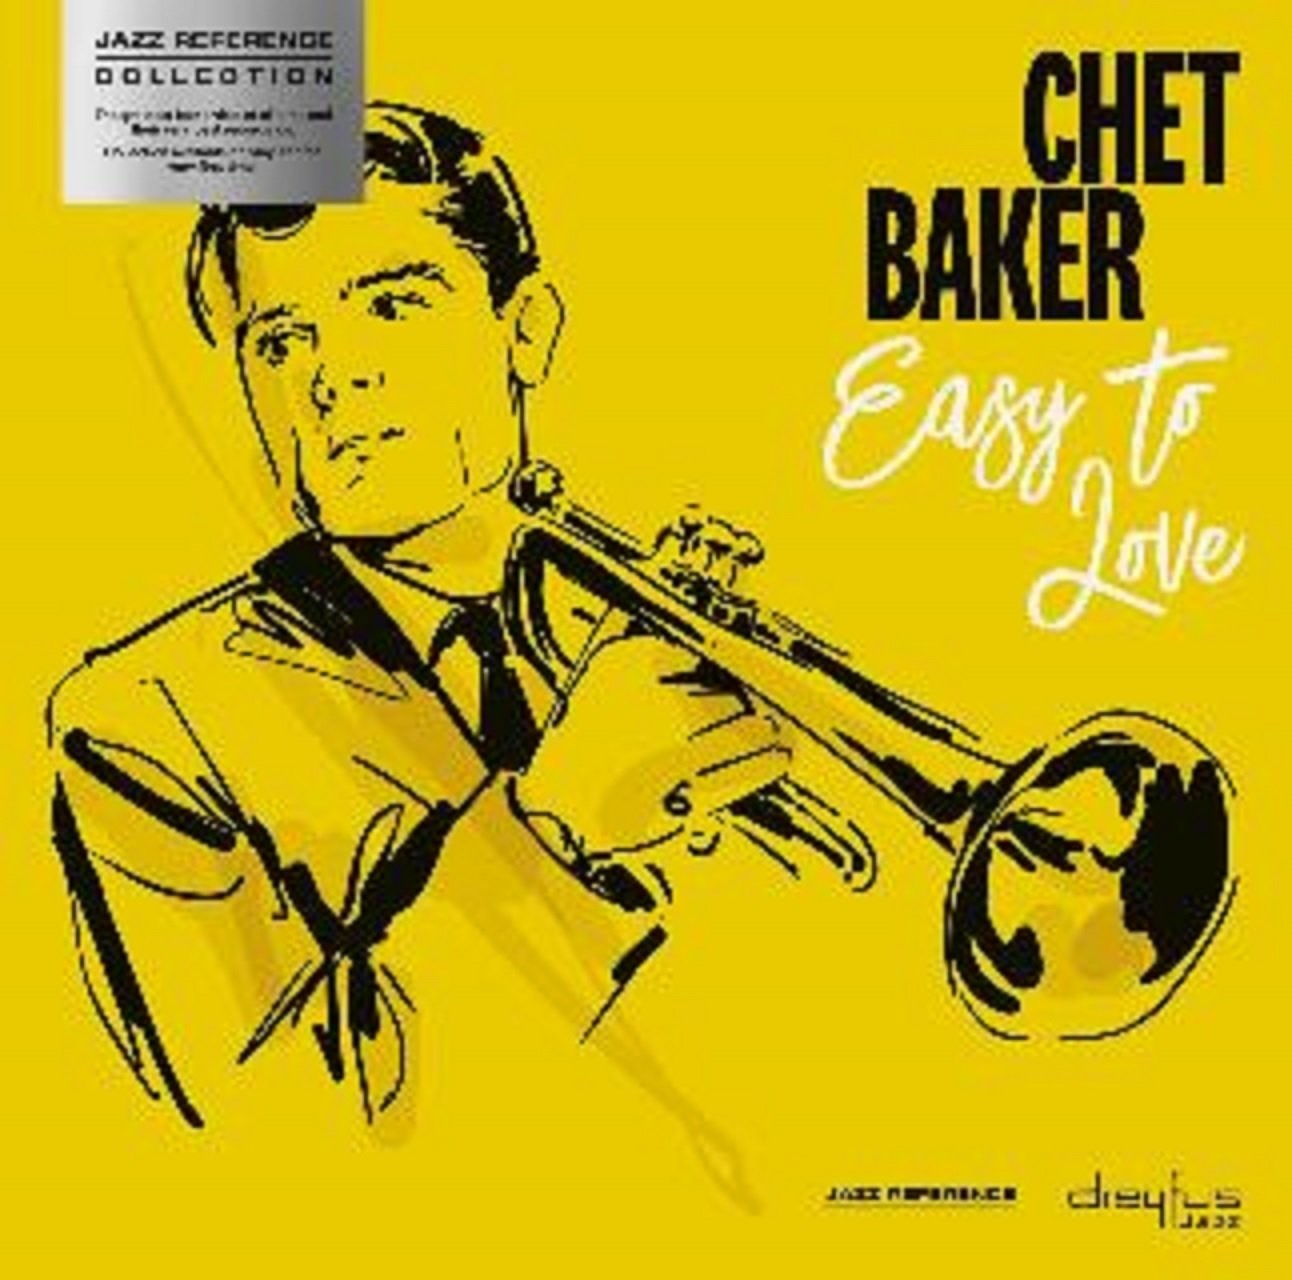 Baker, Chet - Easy to Love